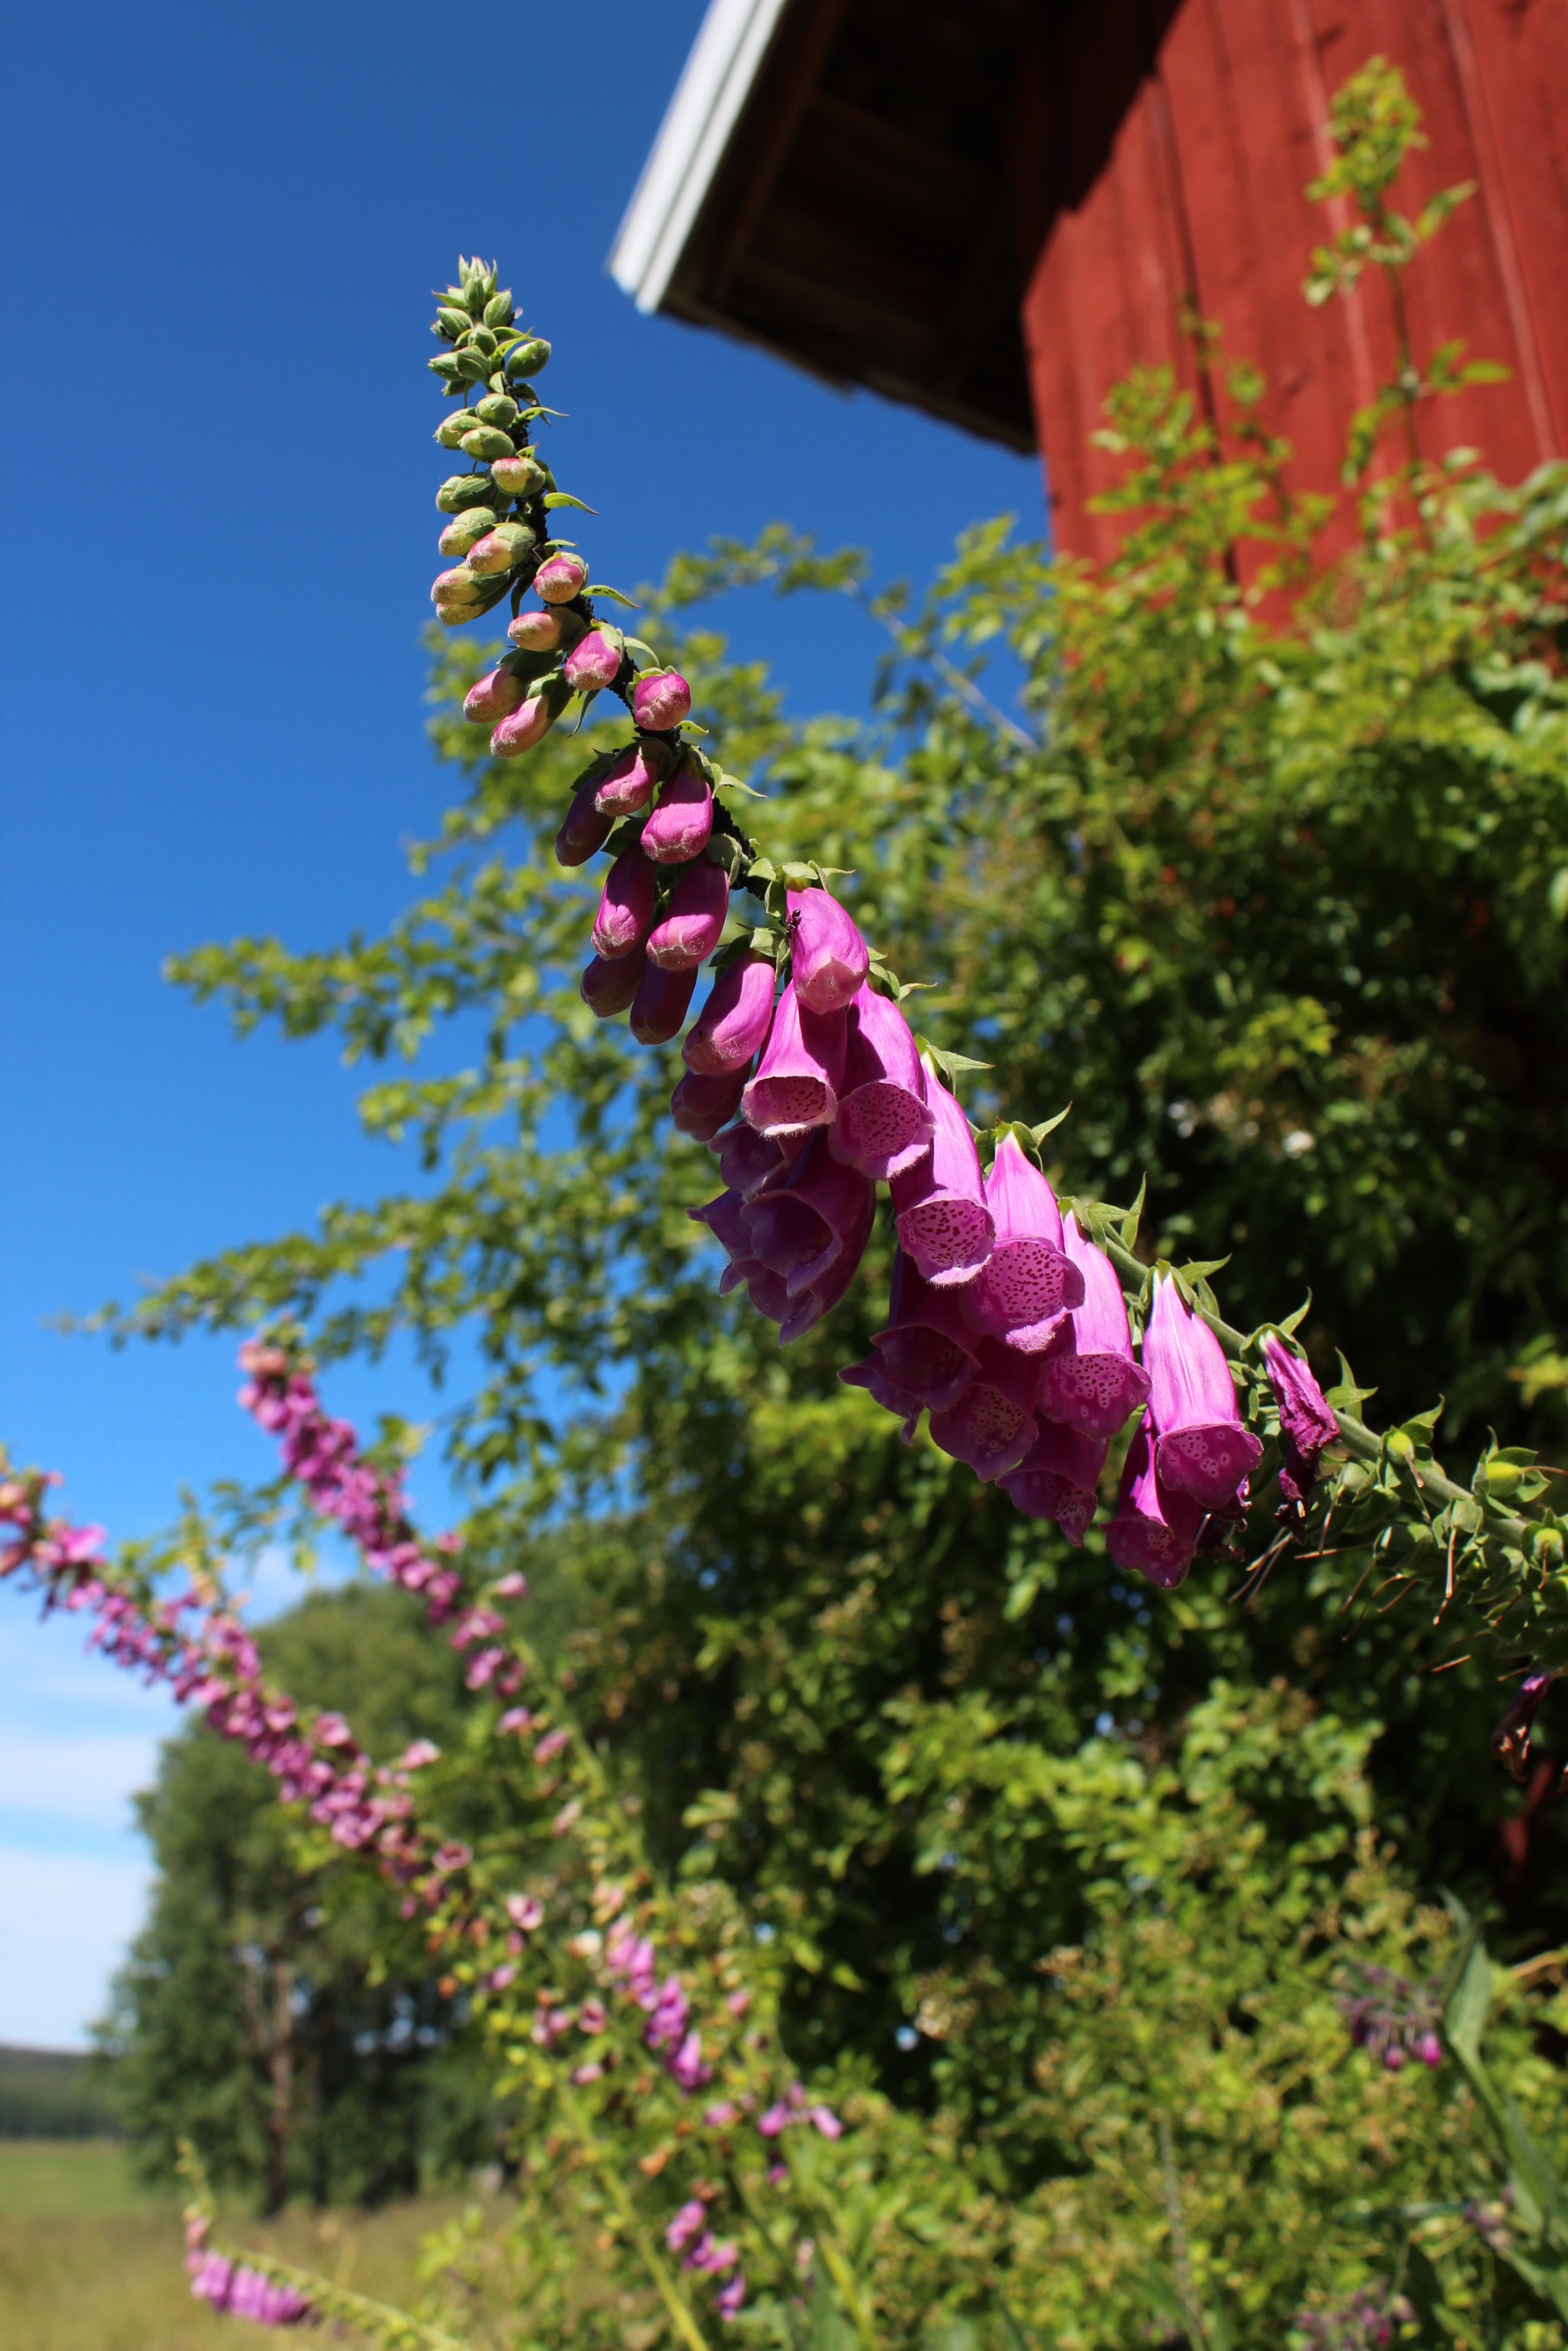 Revebjelle har bjeller som finnes i de ulike fargenyansene lilla, rosa og en sjelden gang hvit.